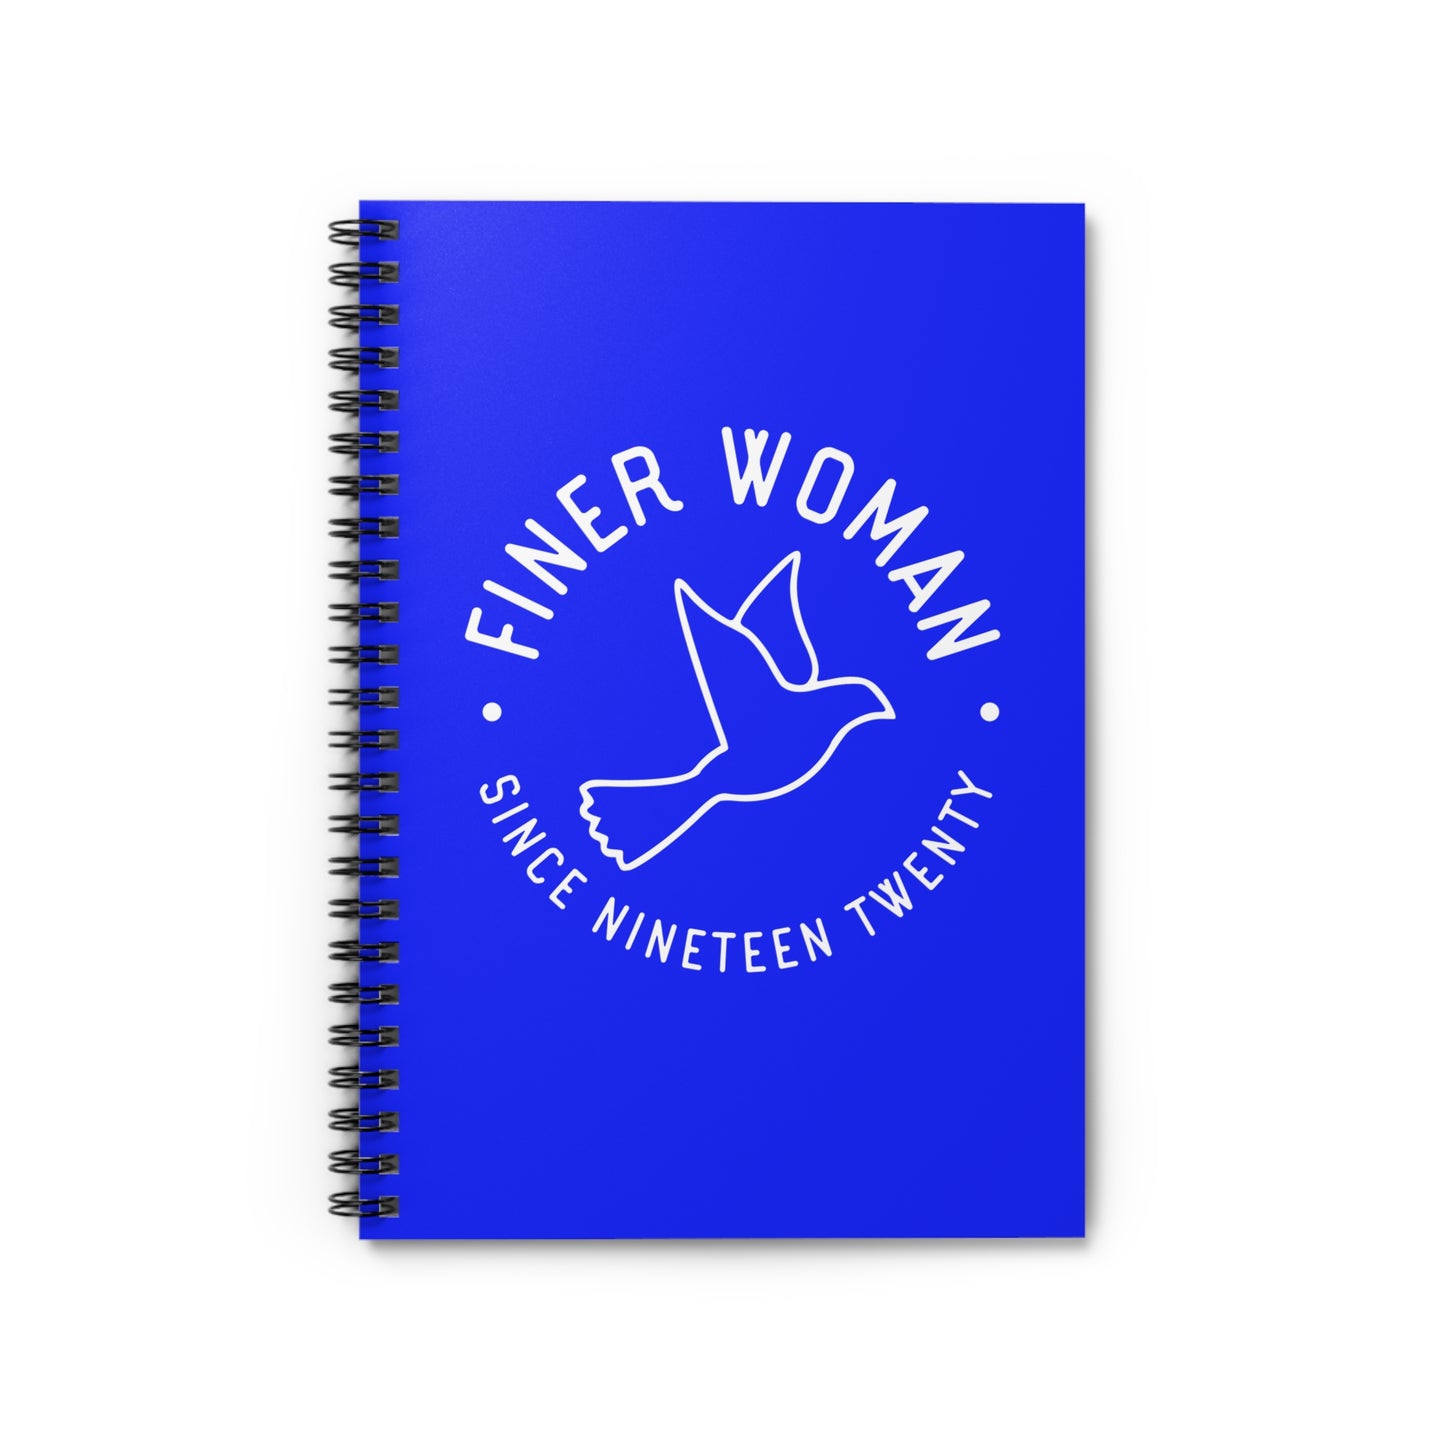 Zeta Finer Woman Mini Notebook